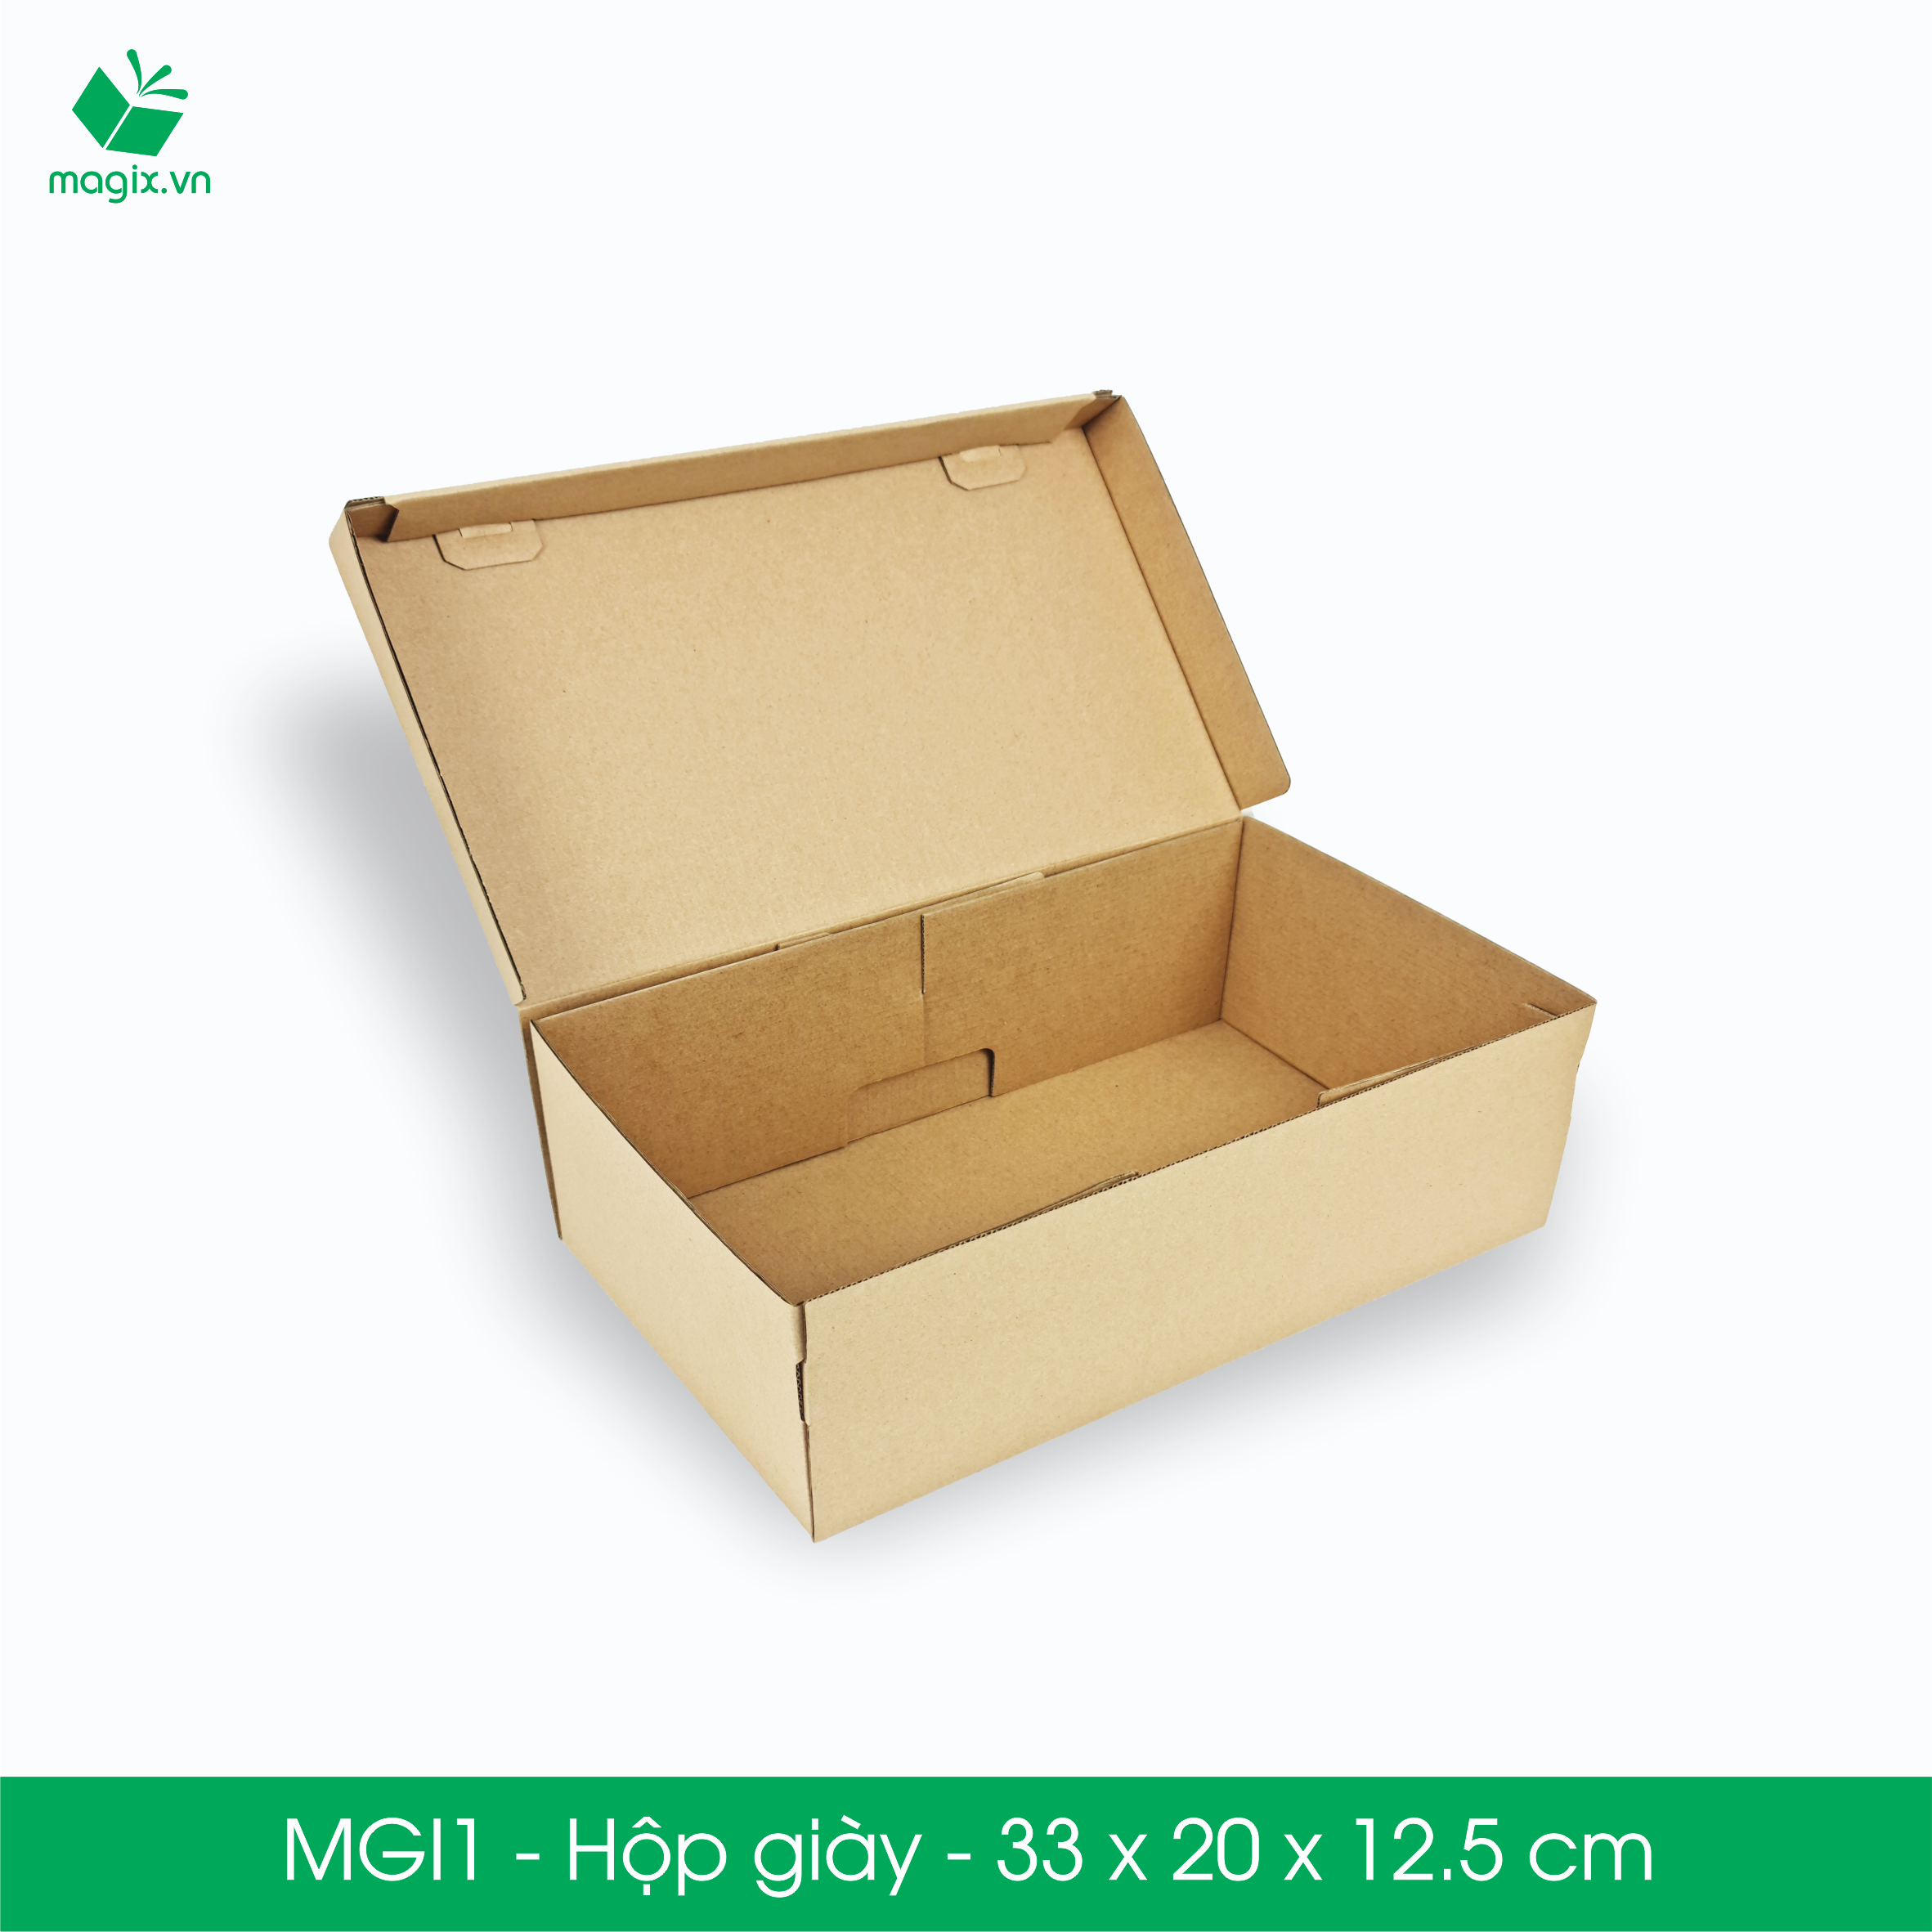 MGI1 - 33x20x12.5cm - 25  Hộp giày - 25/50/100Thùng hộp carton trơn đóng hàng